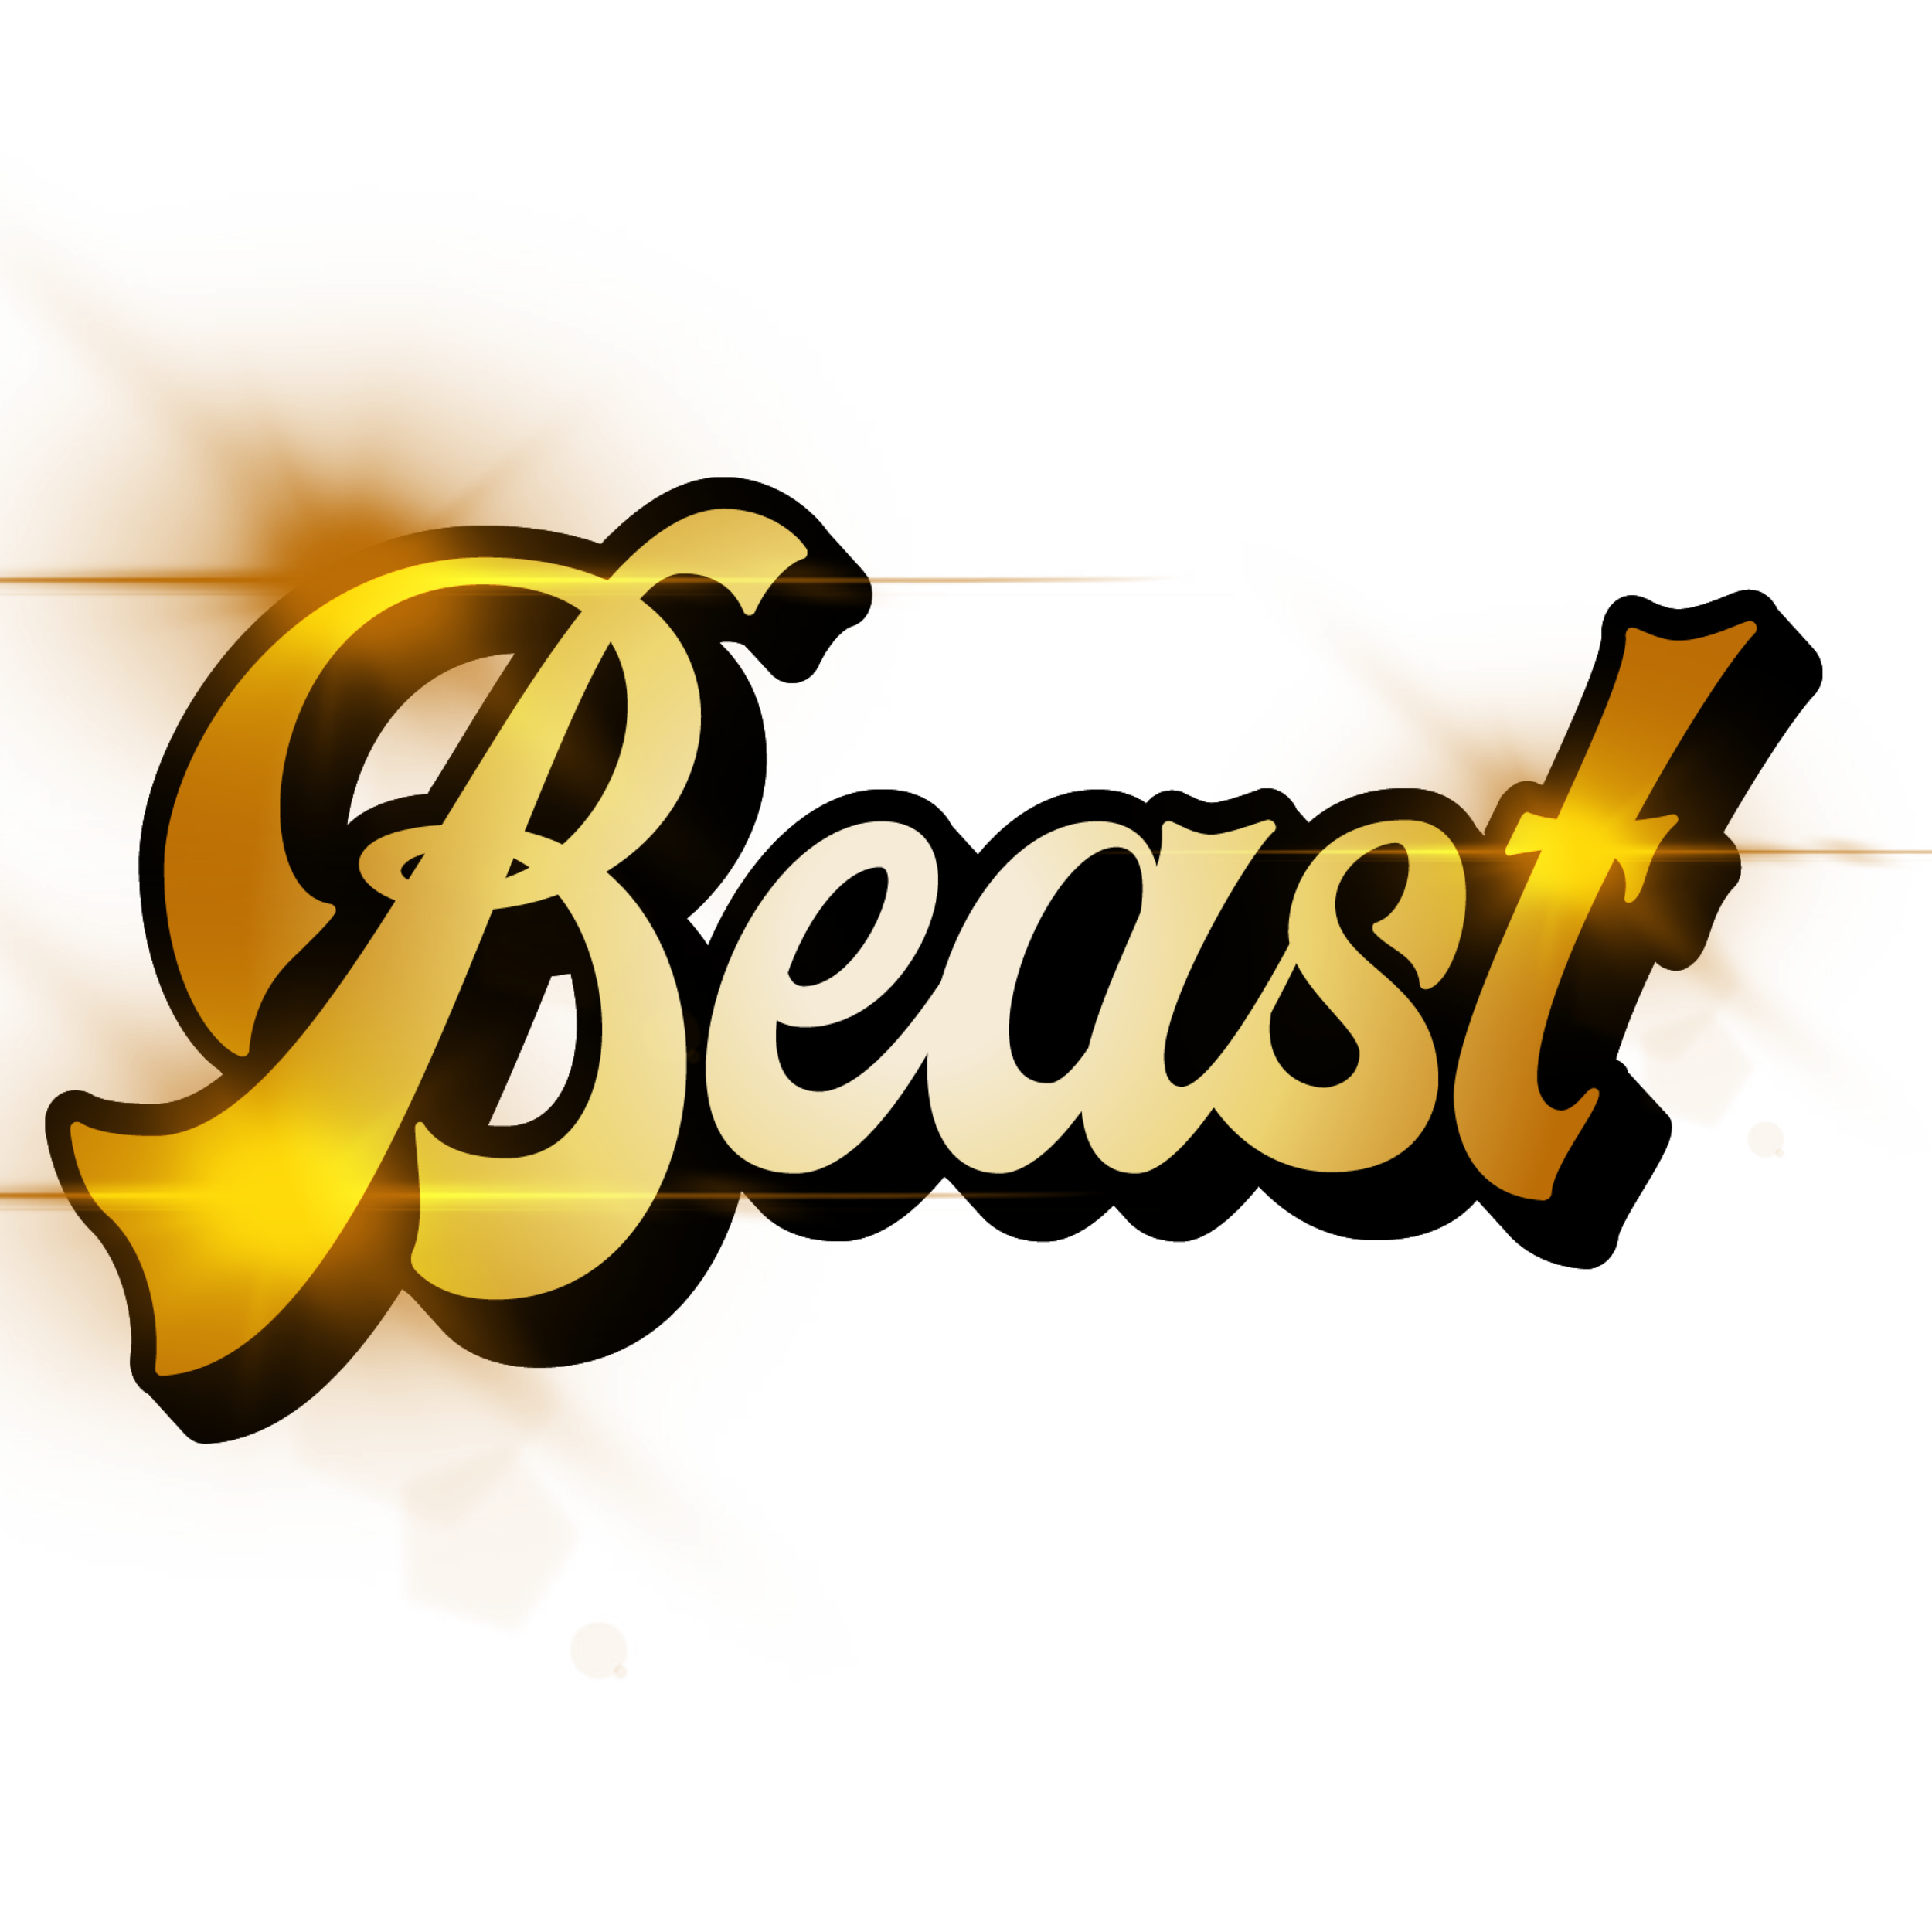 Beast Peter merch high res-01.png